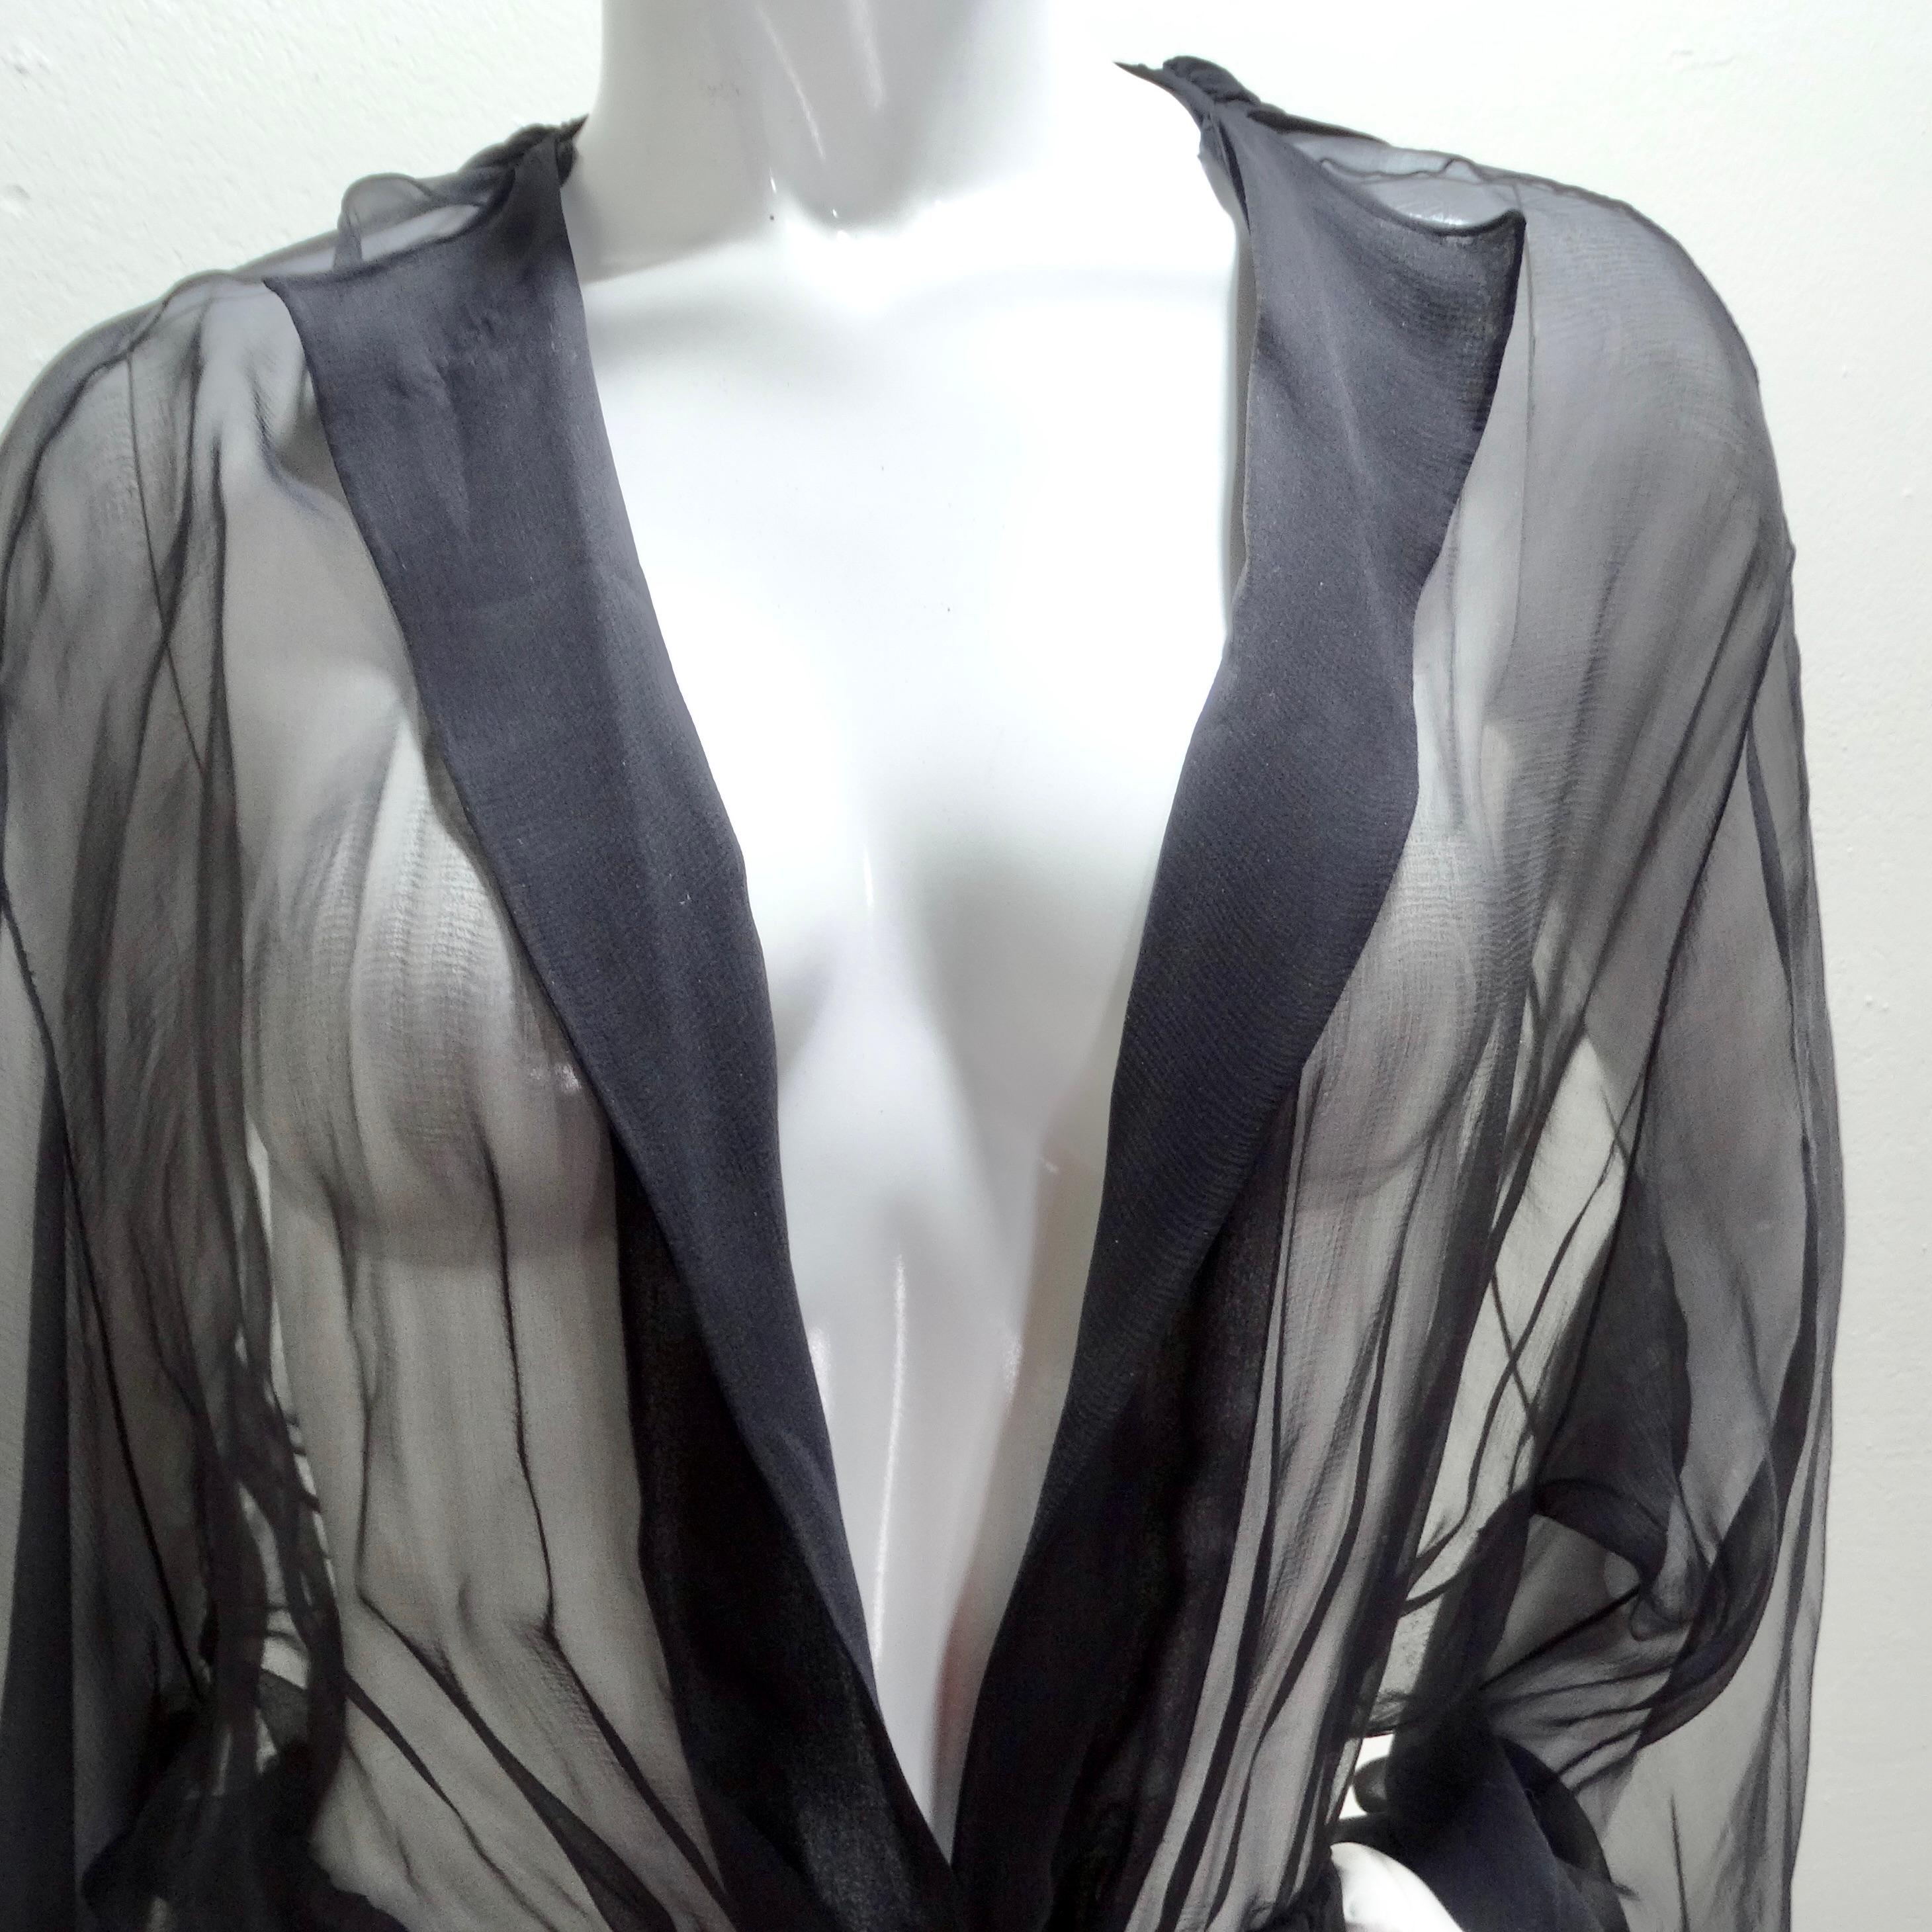 Der 1980s Sheer Silk Hooded Robe ist ein faszinierendes und vielseitiges Kleidungsstück, das mühelos Luxus mit einem Hauch von Bohème-Flair verbindet. Diese bodenlange Robe aus schwarzer Seide ist nicht nur ein Kleidungsstück, sondern ein